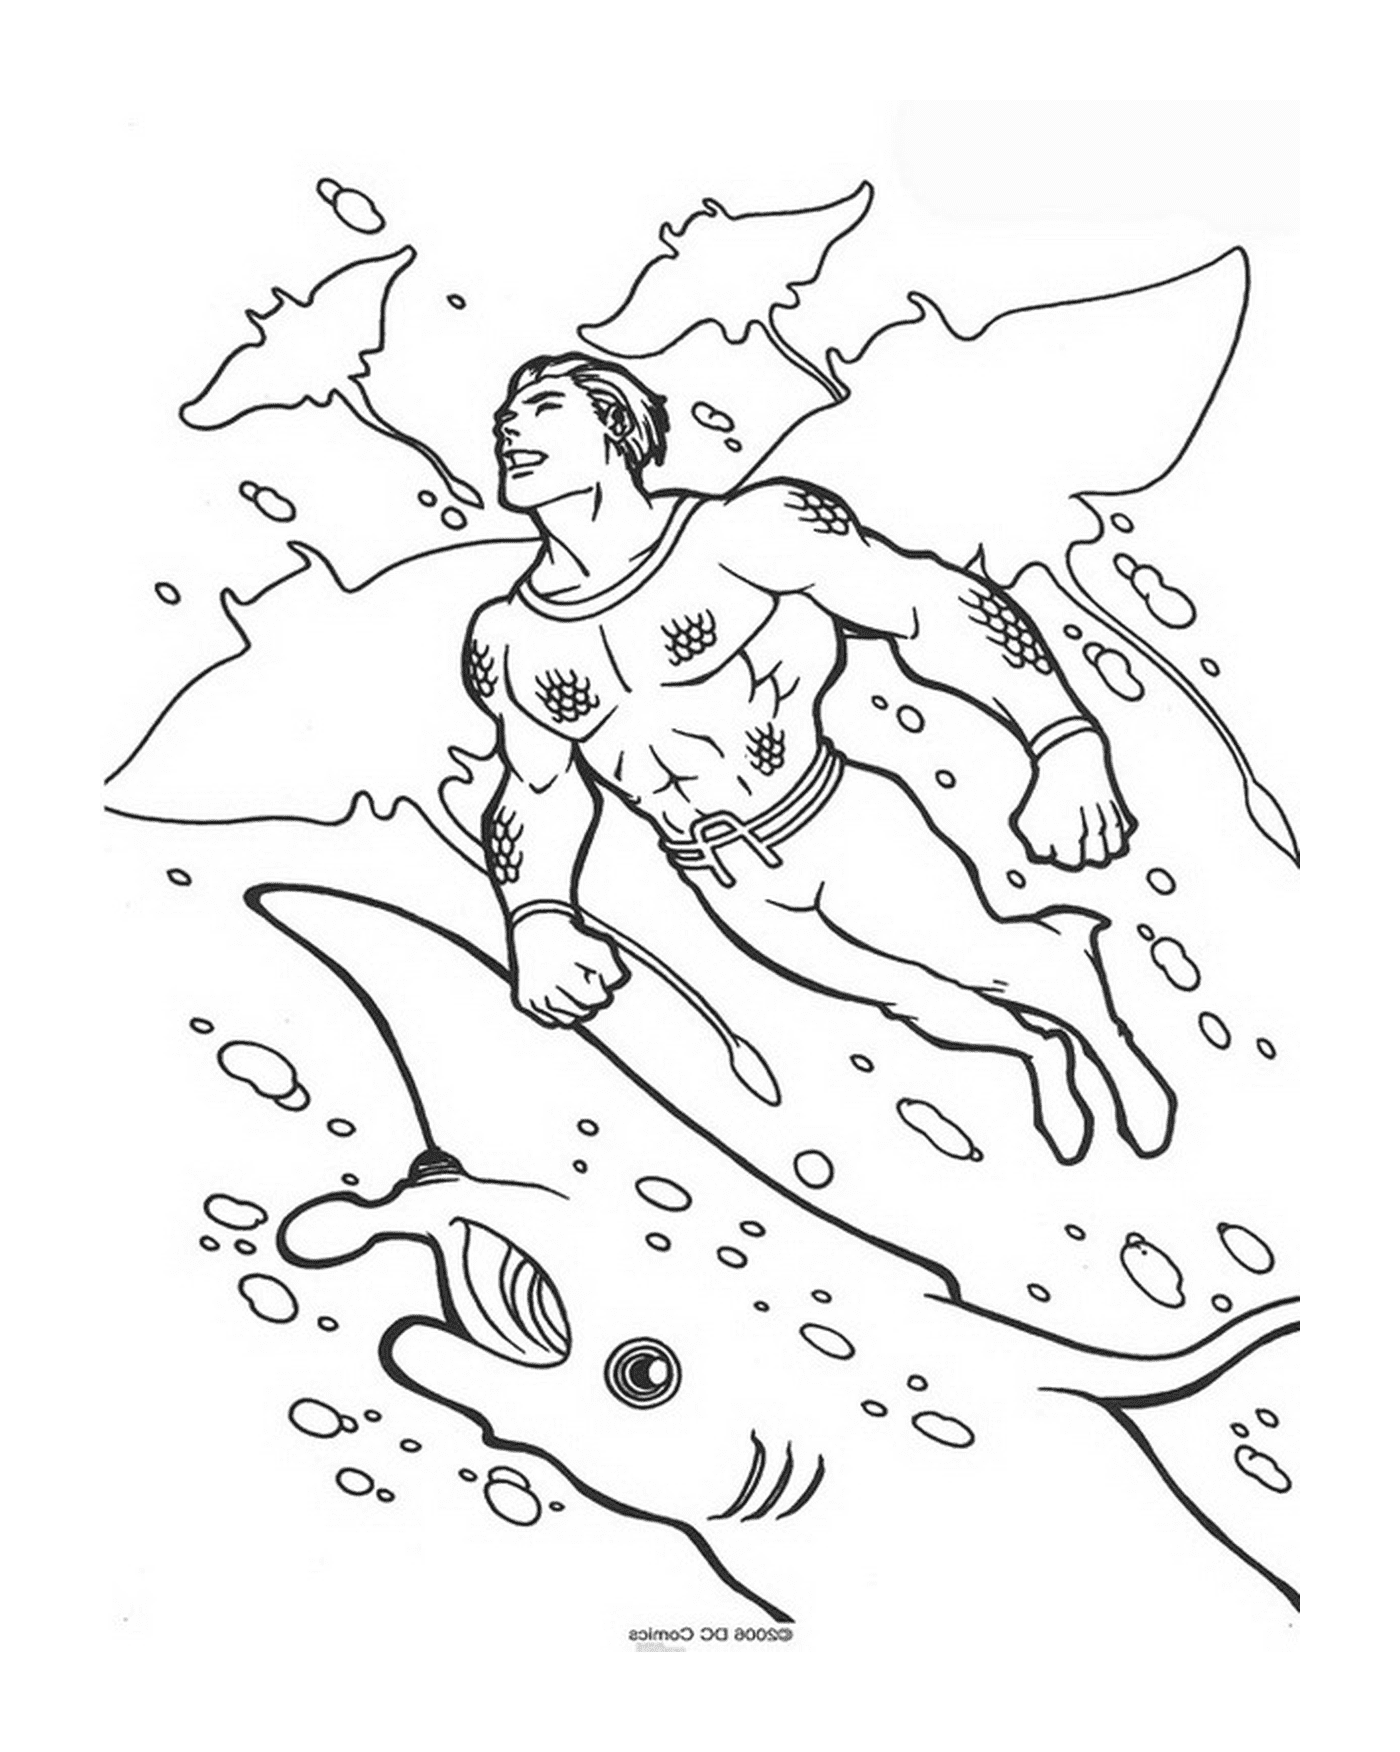  رجل يسبح في المحيط 